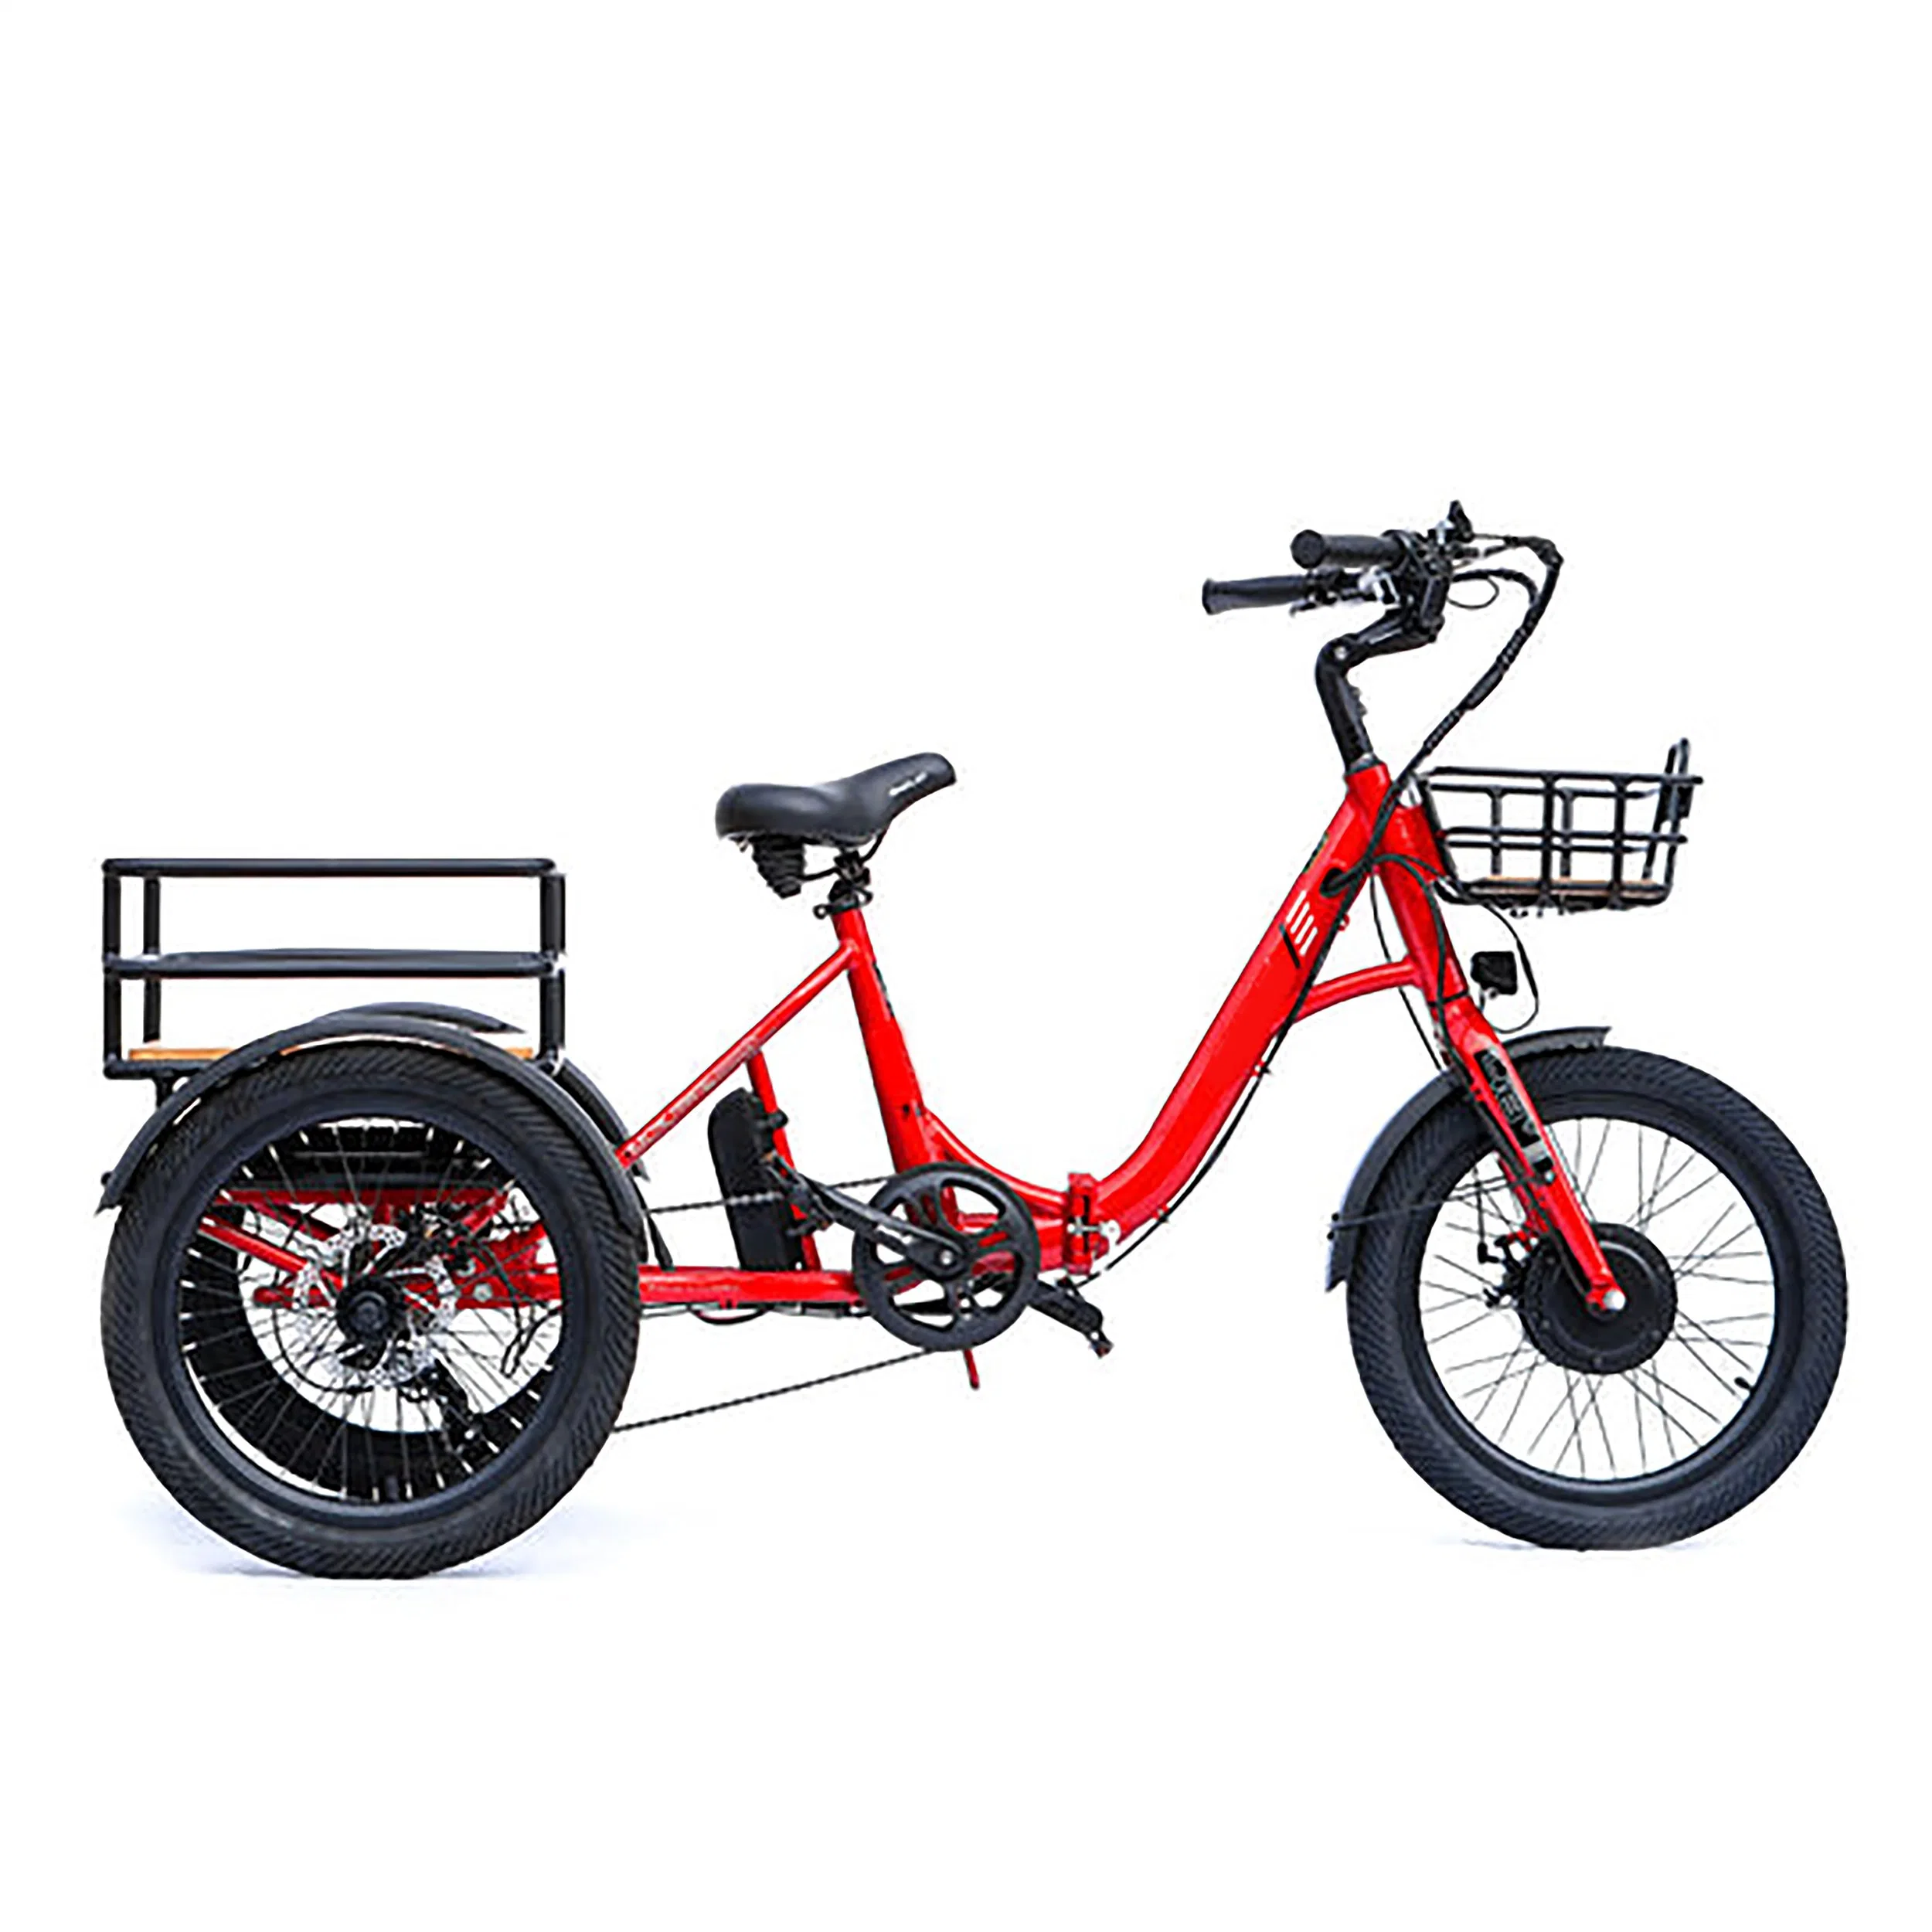 Pneu gordo dobrável e bicicleta bicicleta elétrica bicicleta City Road Moto eBike motor elétrico de sujidade